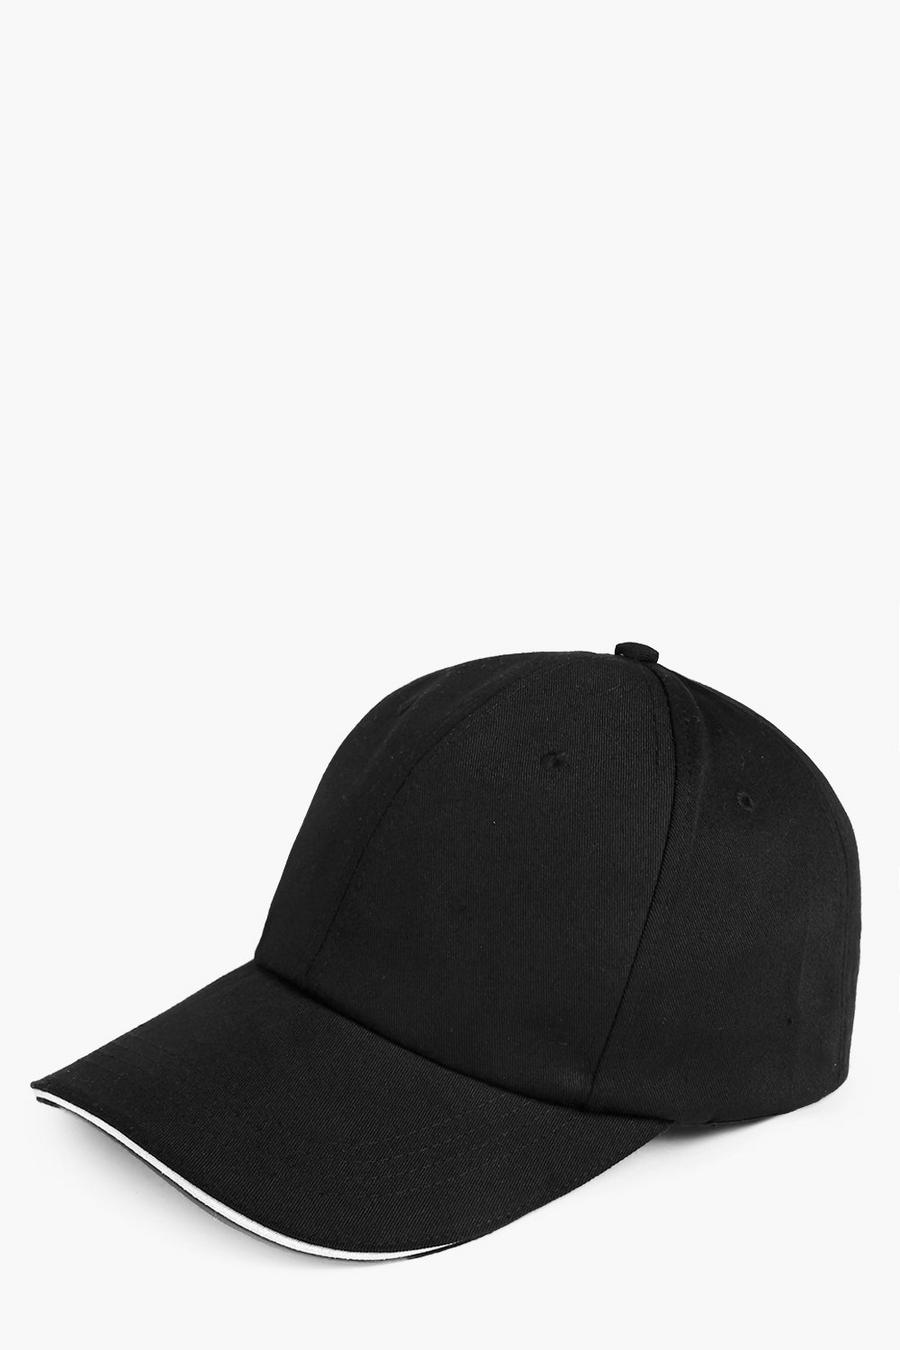 שחור כובע ארין חלק